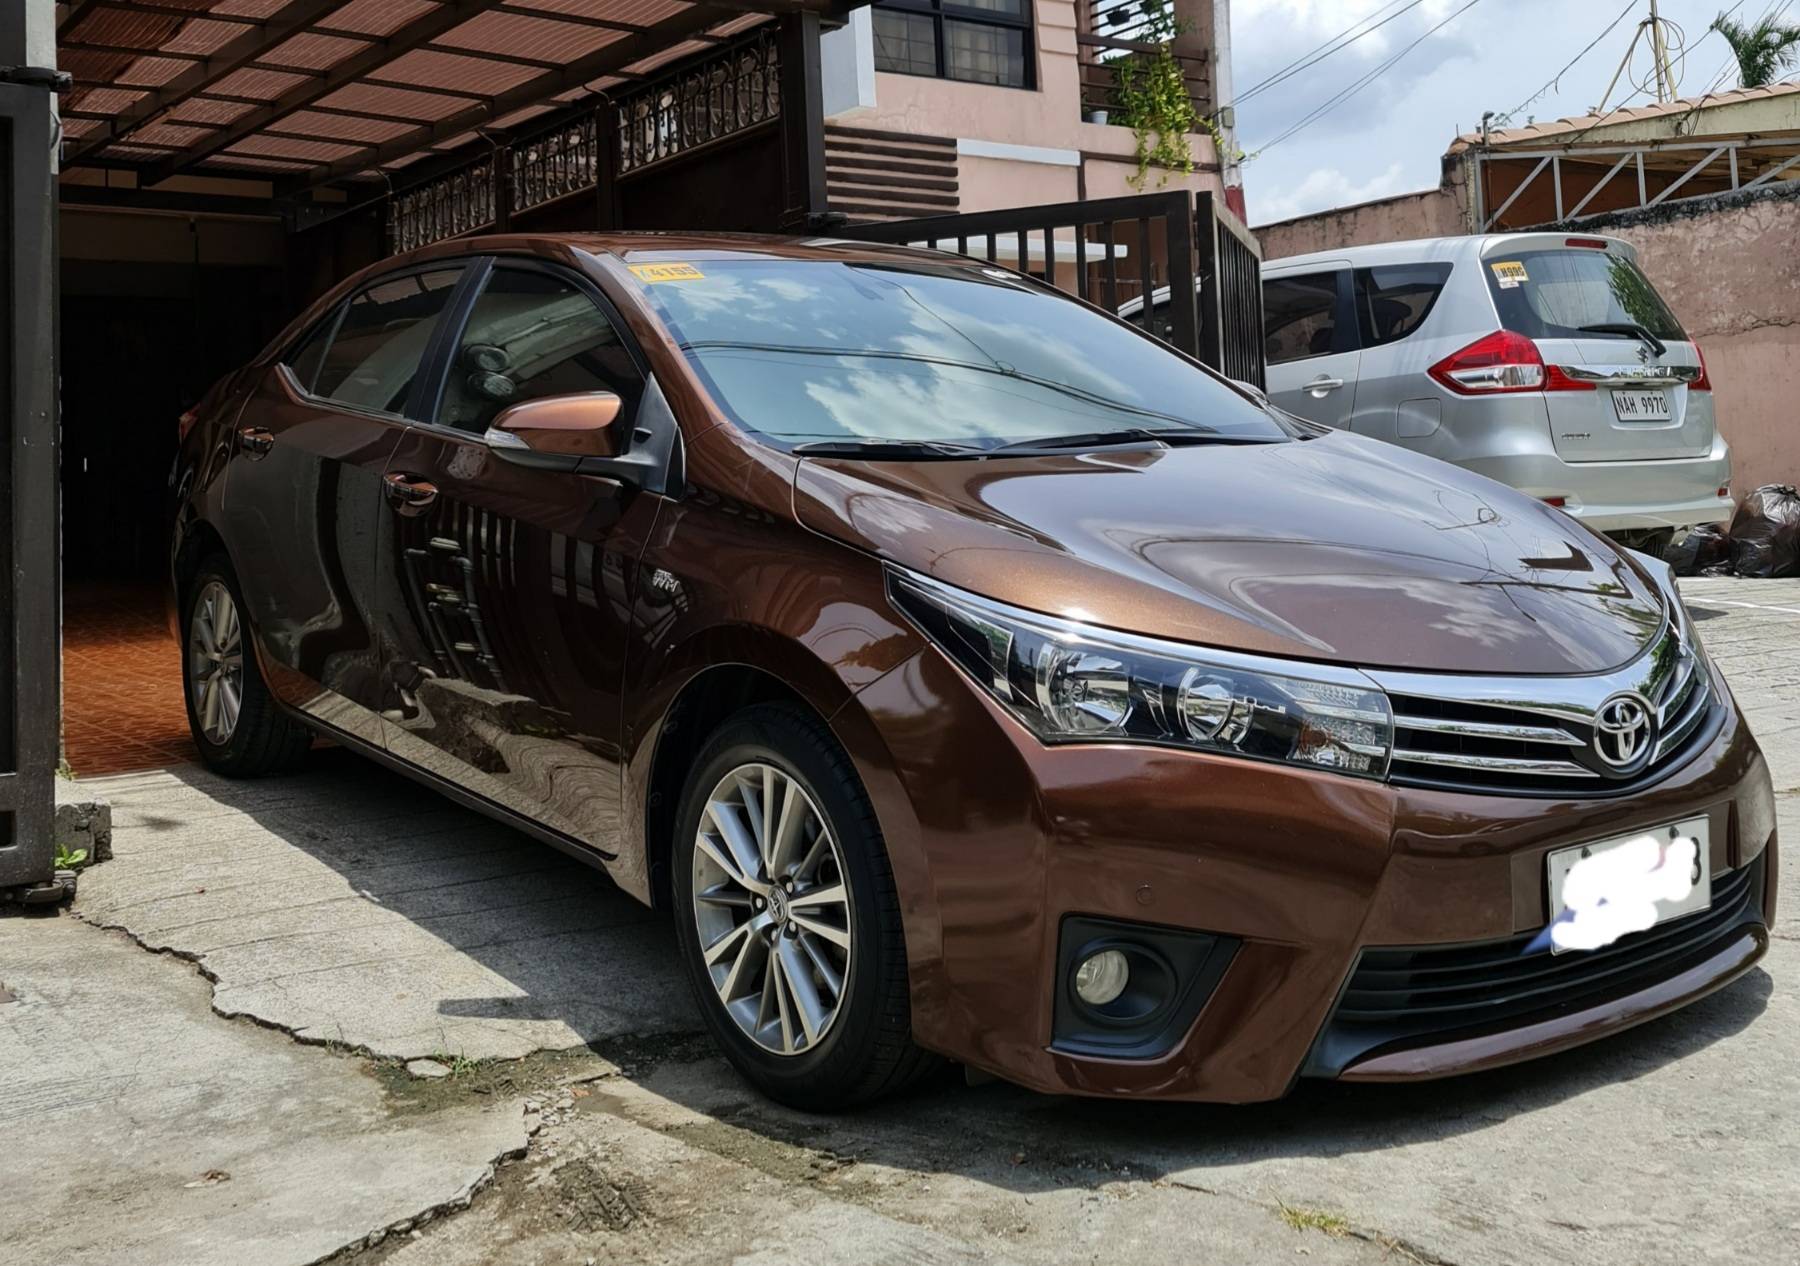 Toyota Corolla Altis 2021 Price List Philippines, Promos, Specs - Carmudi